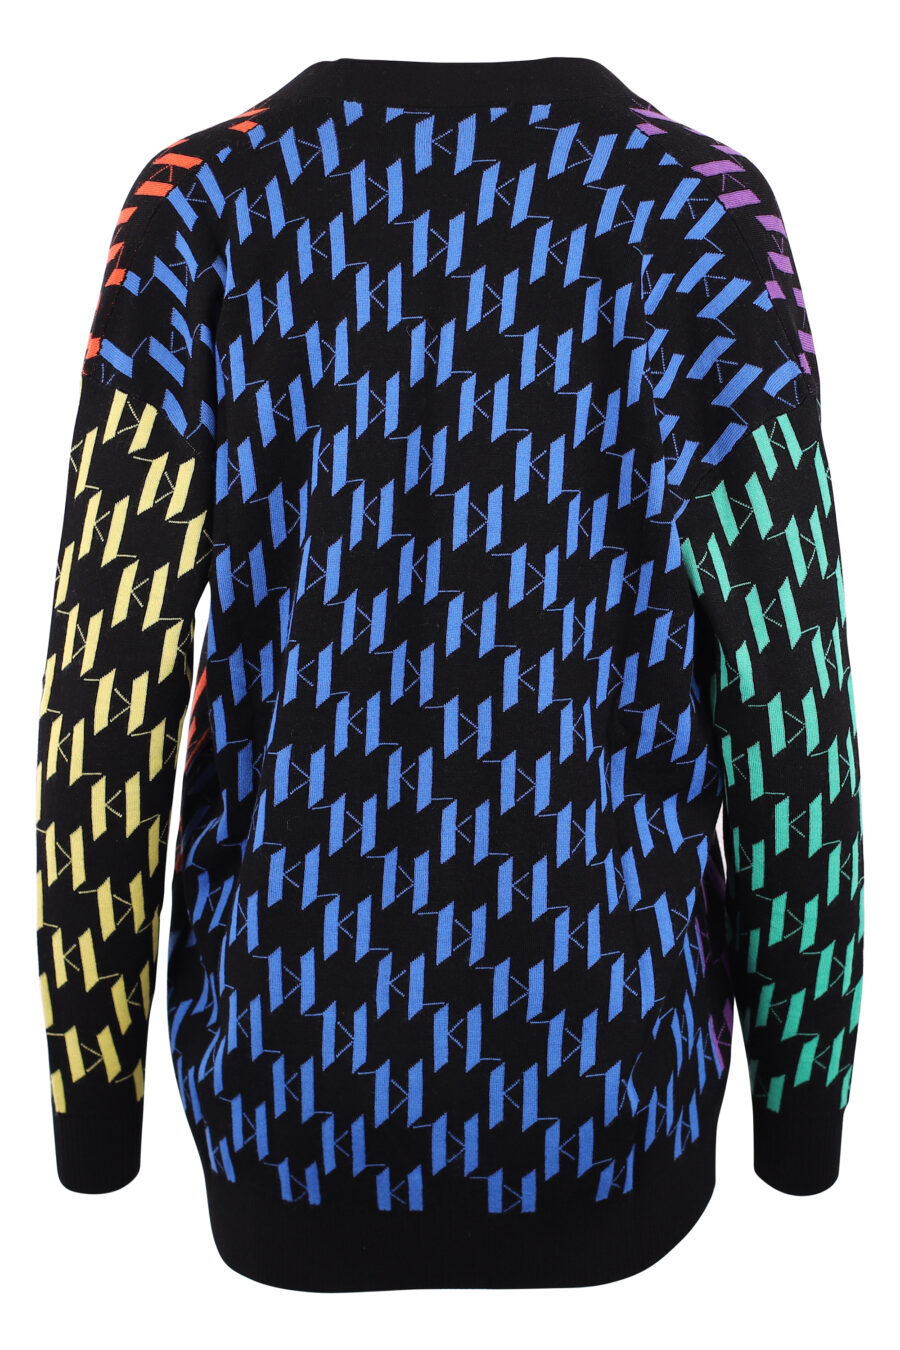 Casaco de malha multicolorido com monograma - IMG 6143